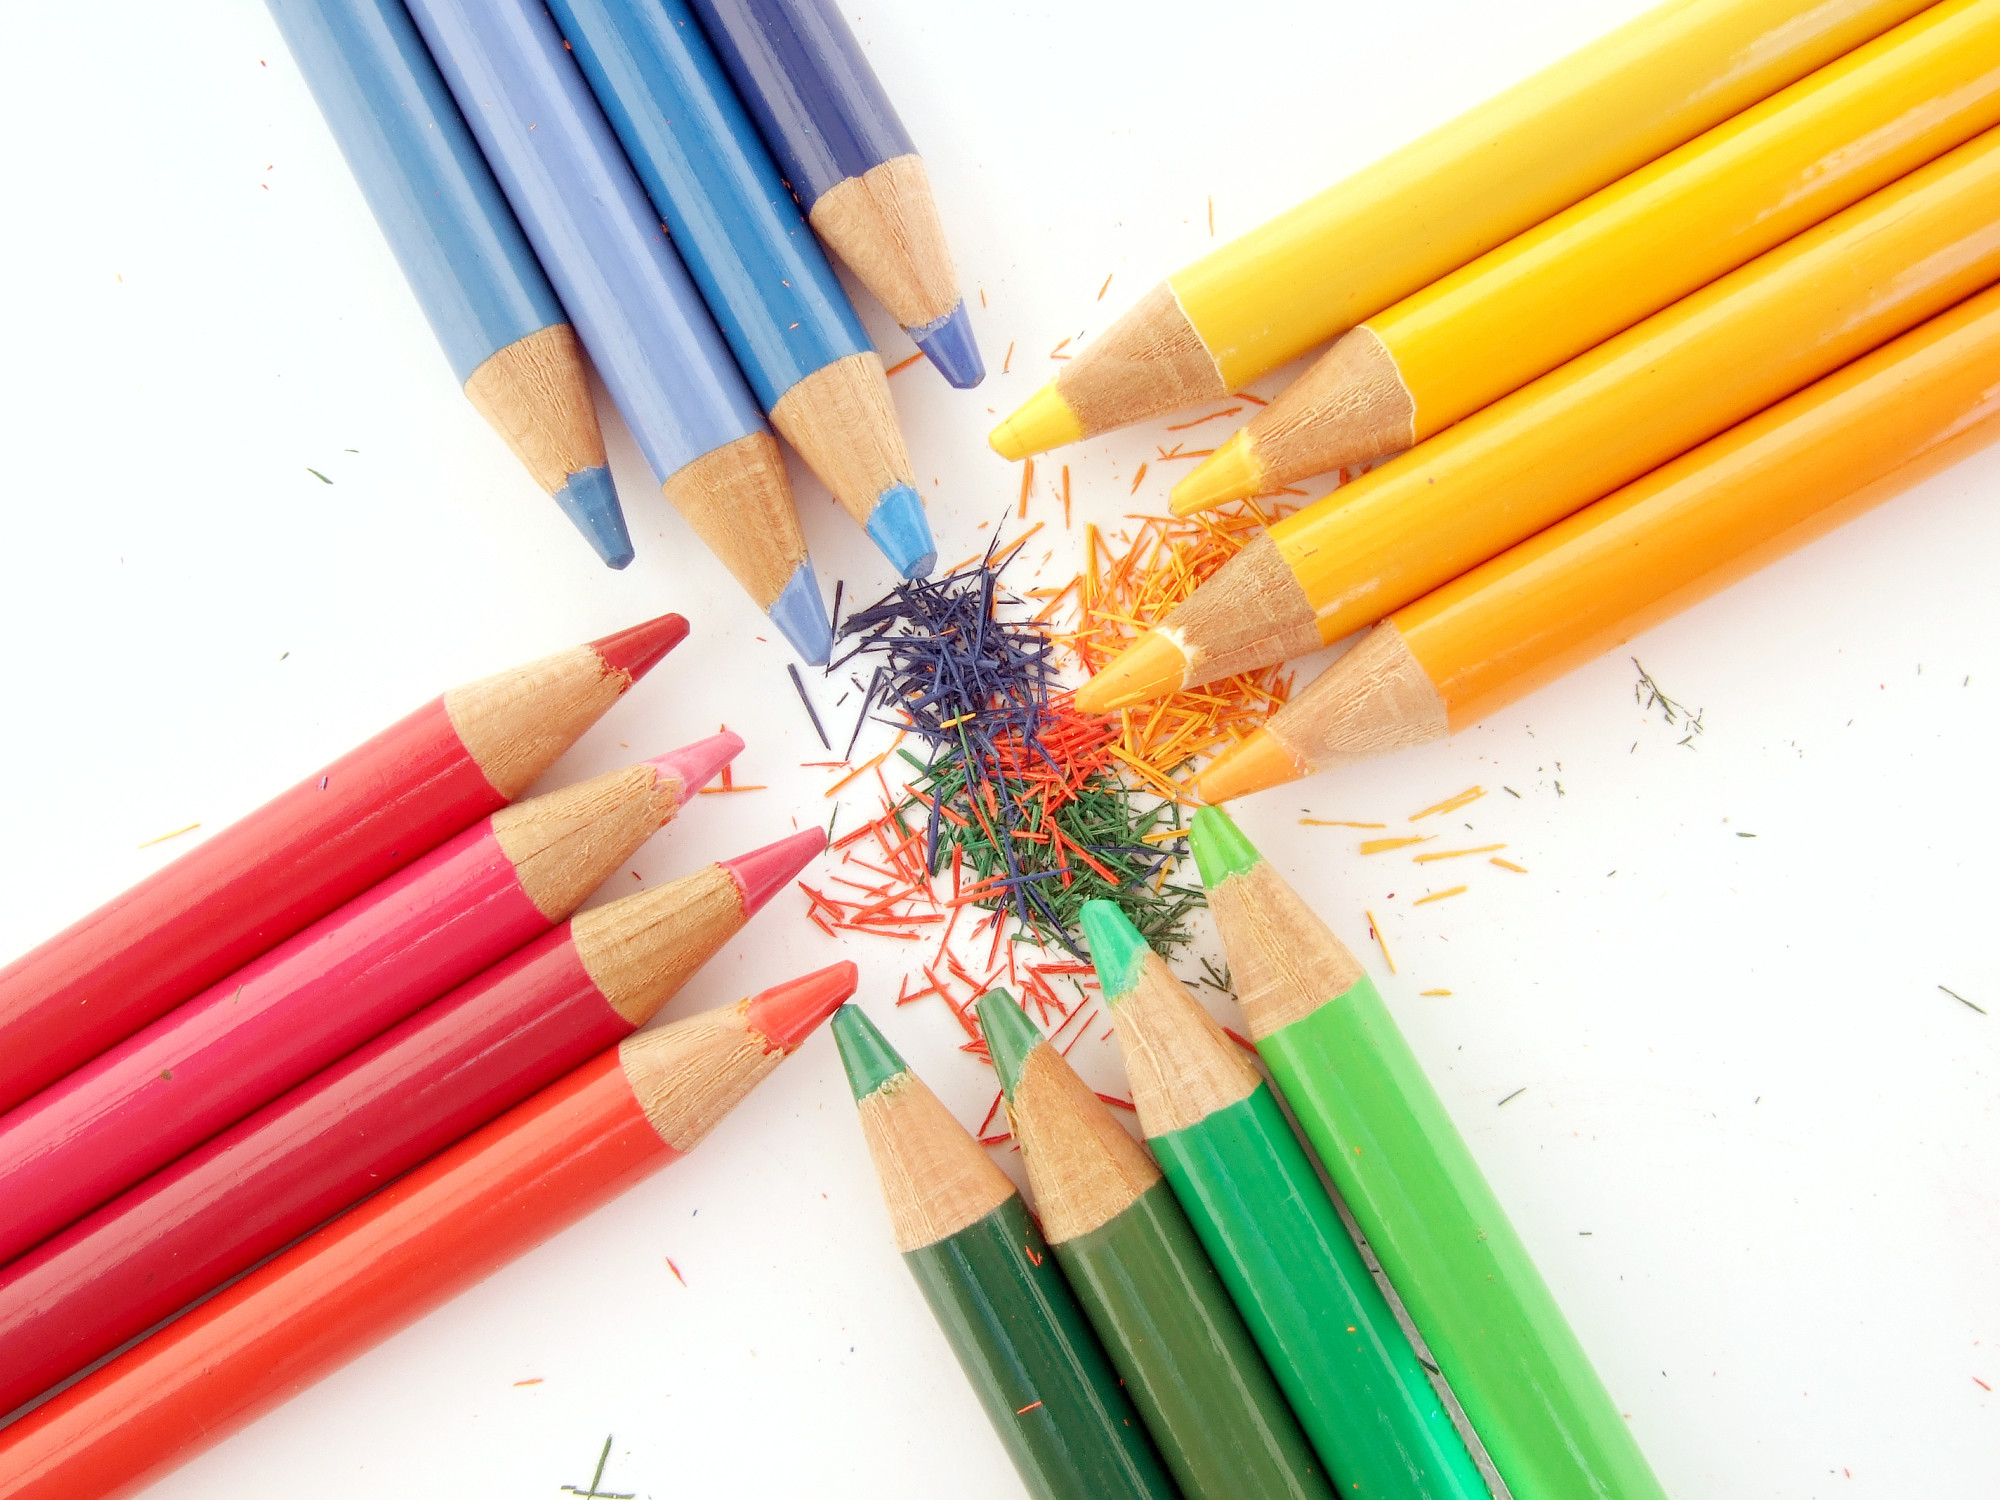 2000x1500 Colored Pencils - Pencils Wallpaper (22186482) - Fanpop ...